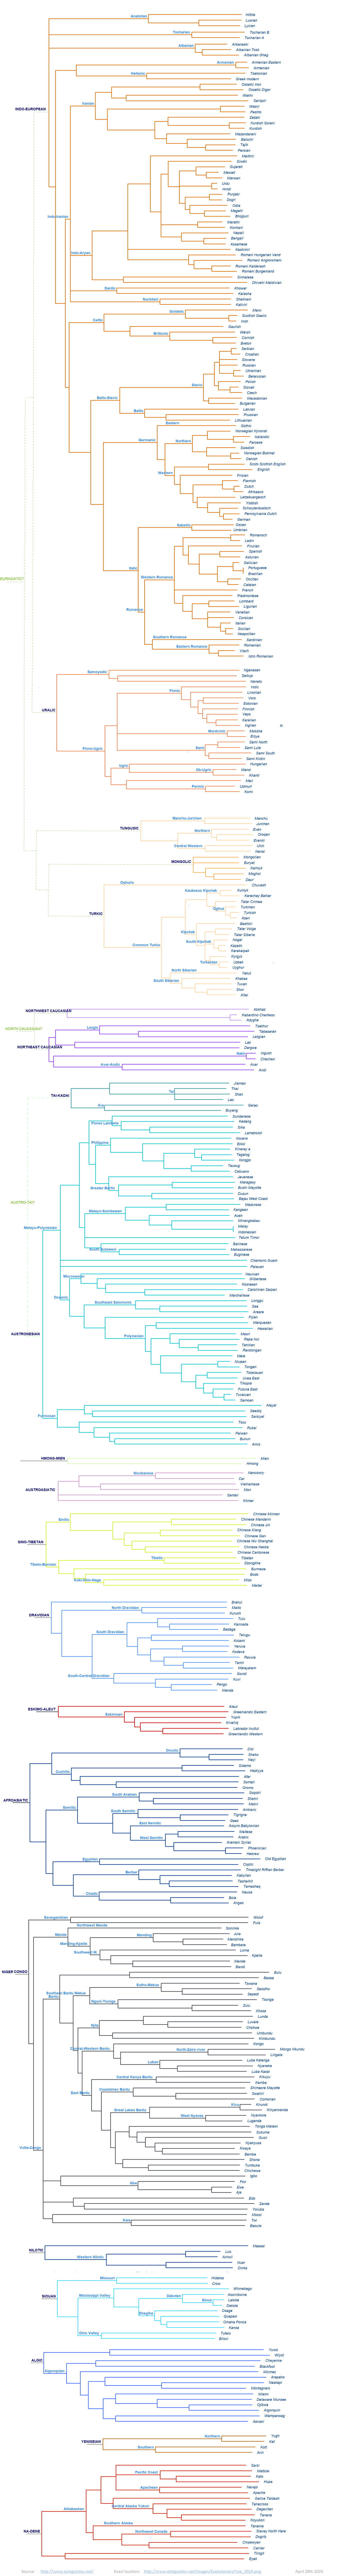 Language evolutionary tree